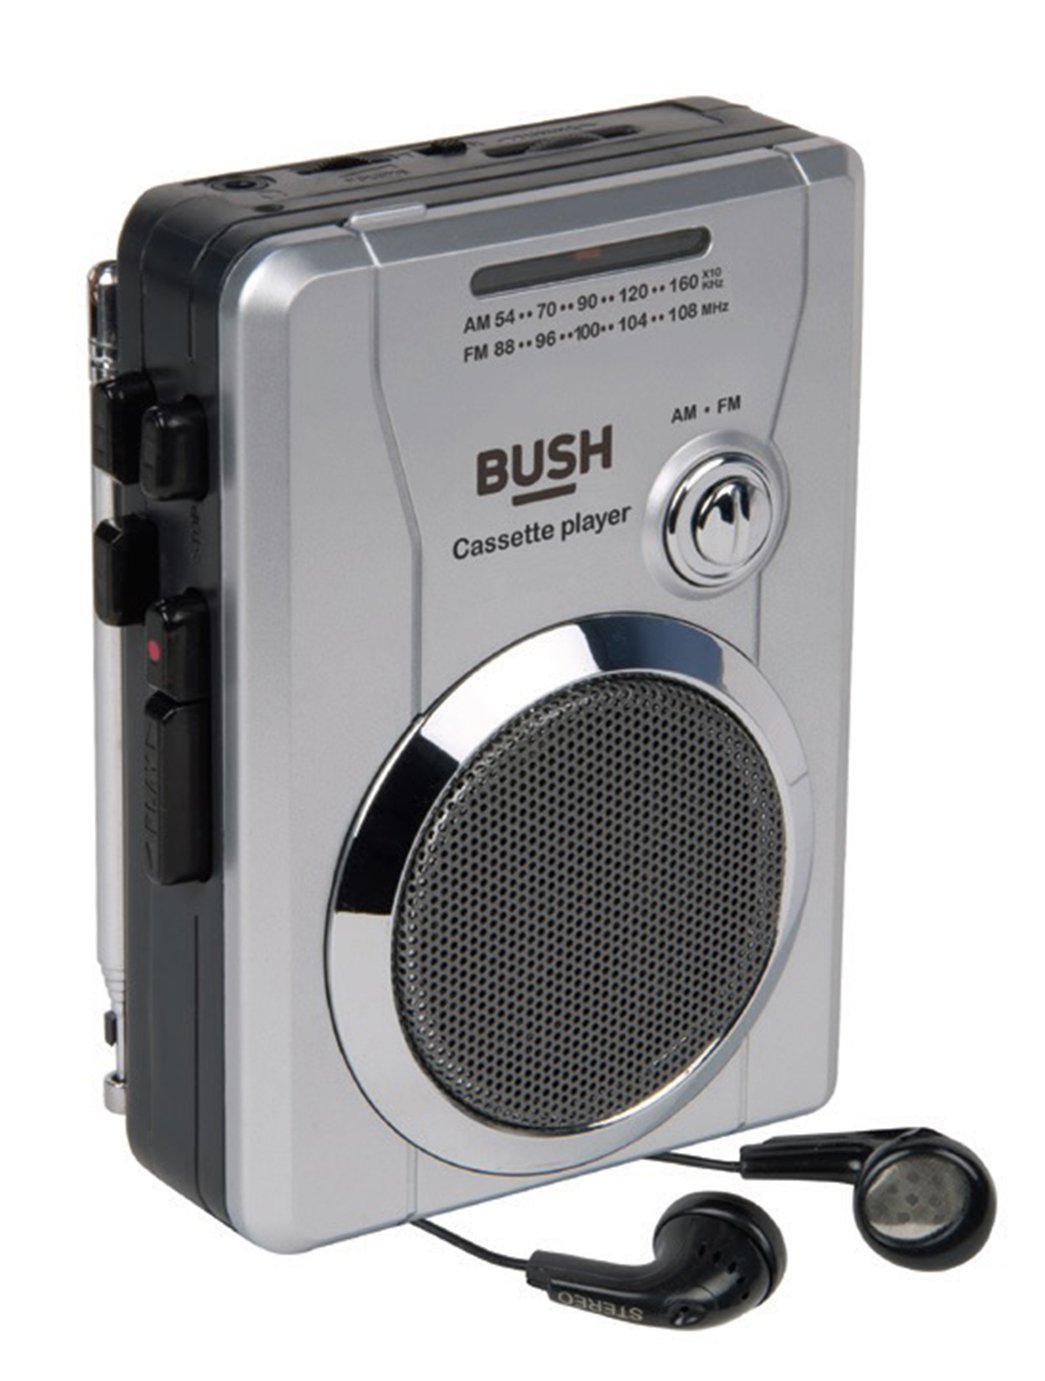 Bush Portable Cassette Player